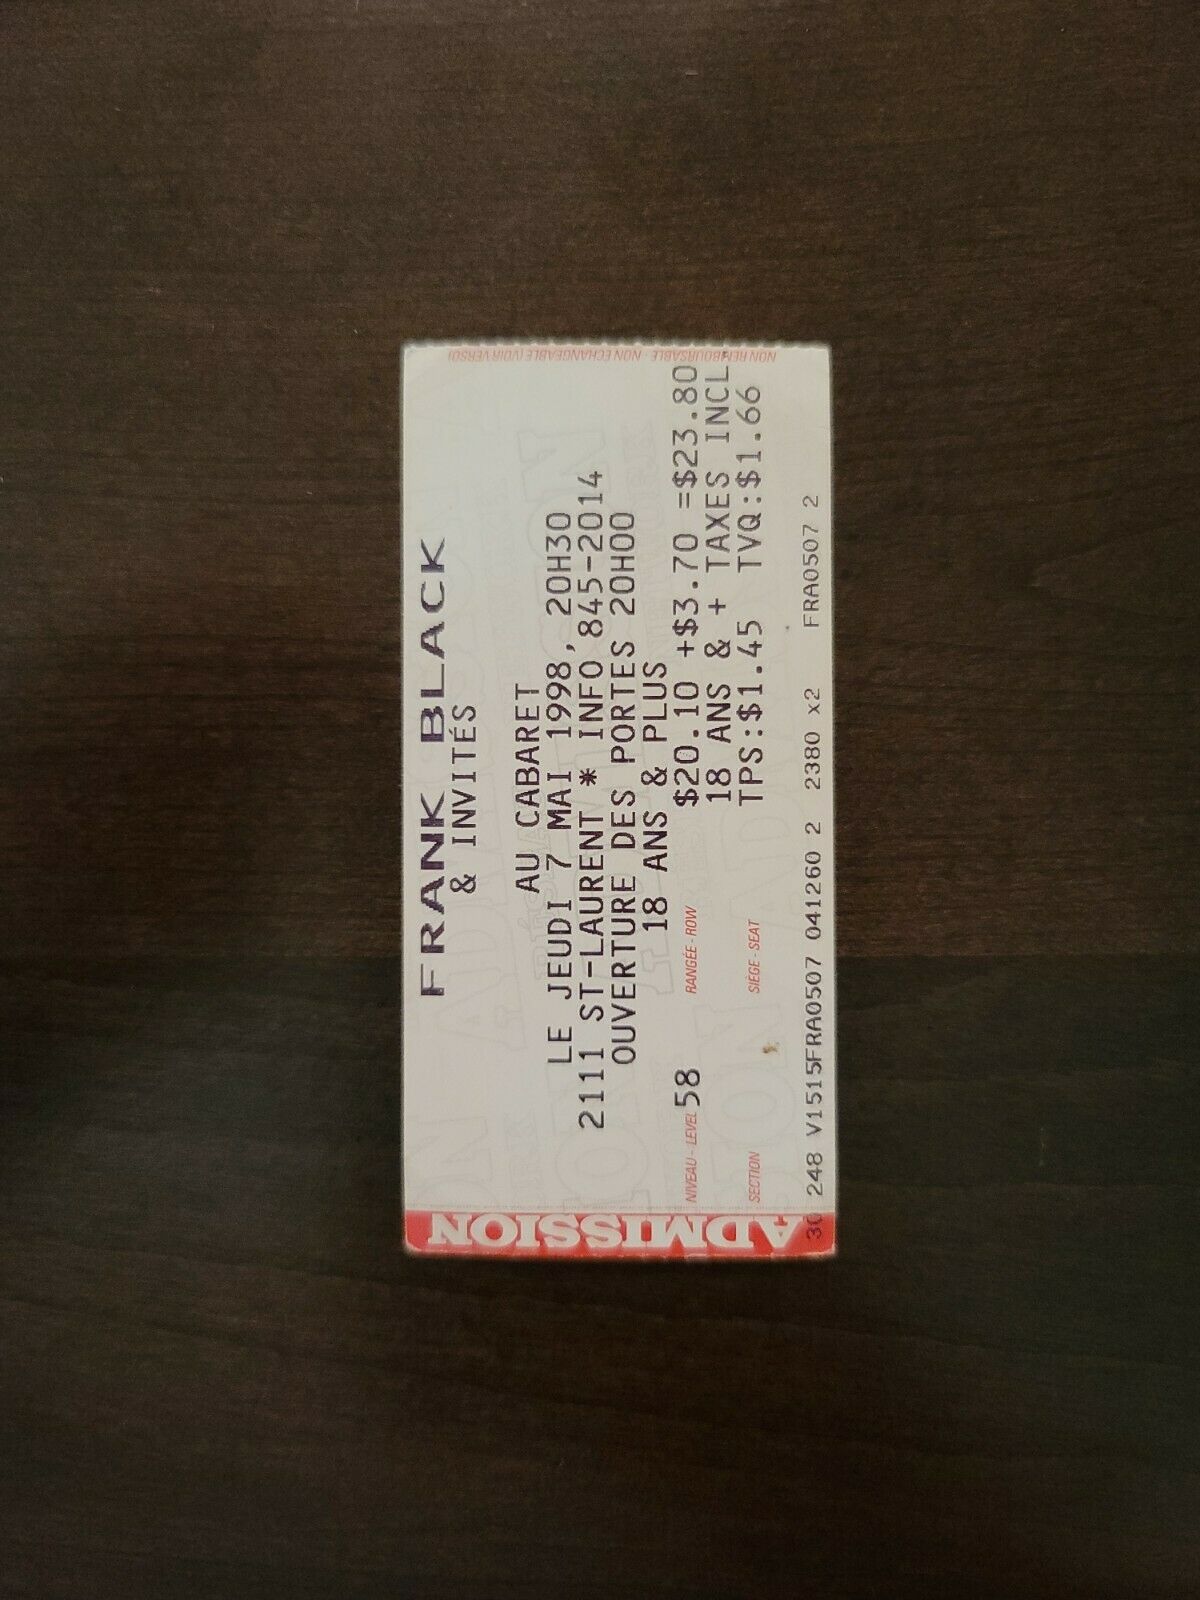 Frank Black 1998, Montreal Au Cabaret Original Concert Ticket Stub